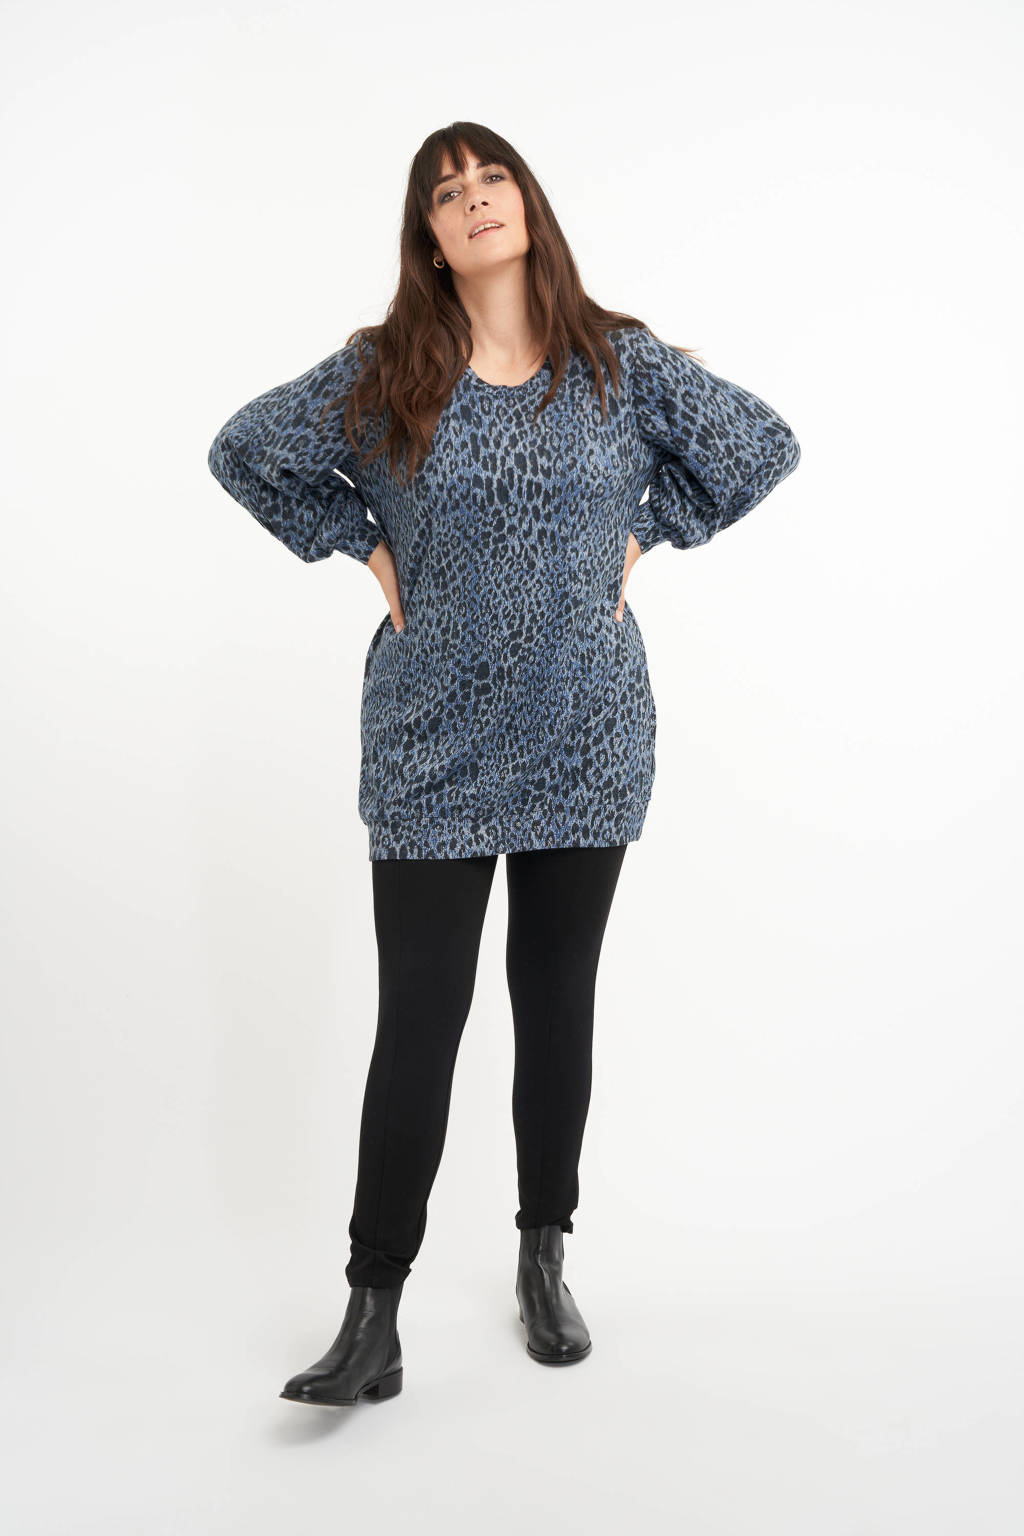 Blauw en zwarte dames MS Mode trui van polyester met panterprint, lange mouwen en elastische boord